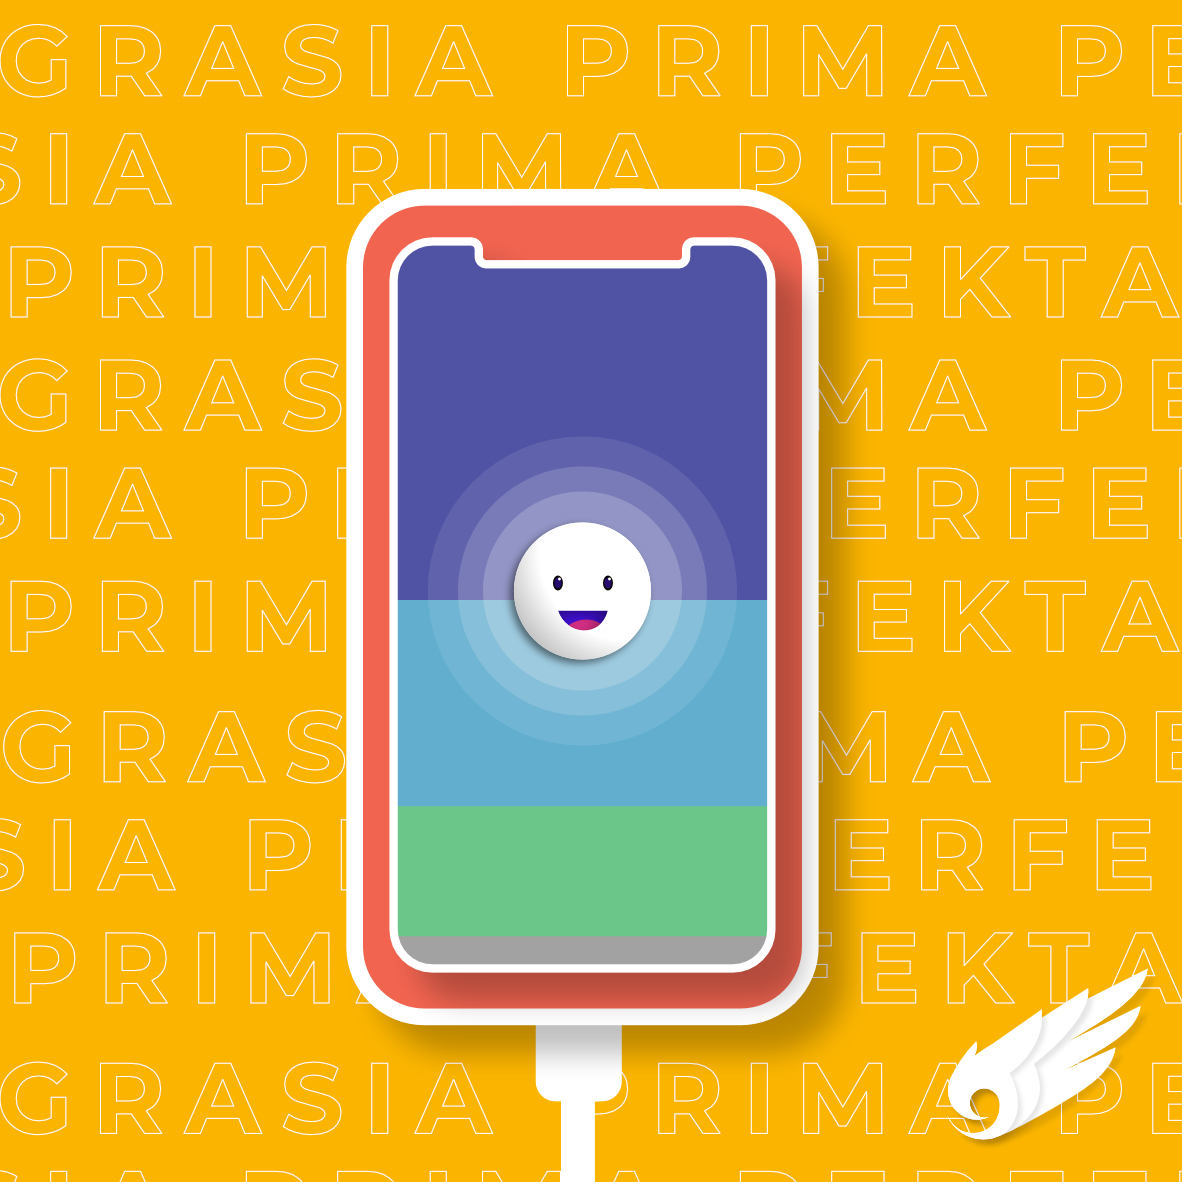 Aplikasi berbasis mobile untuk berkomunikasi dengan pengguna lebih personal